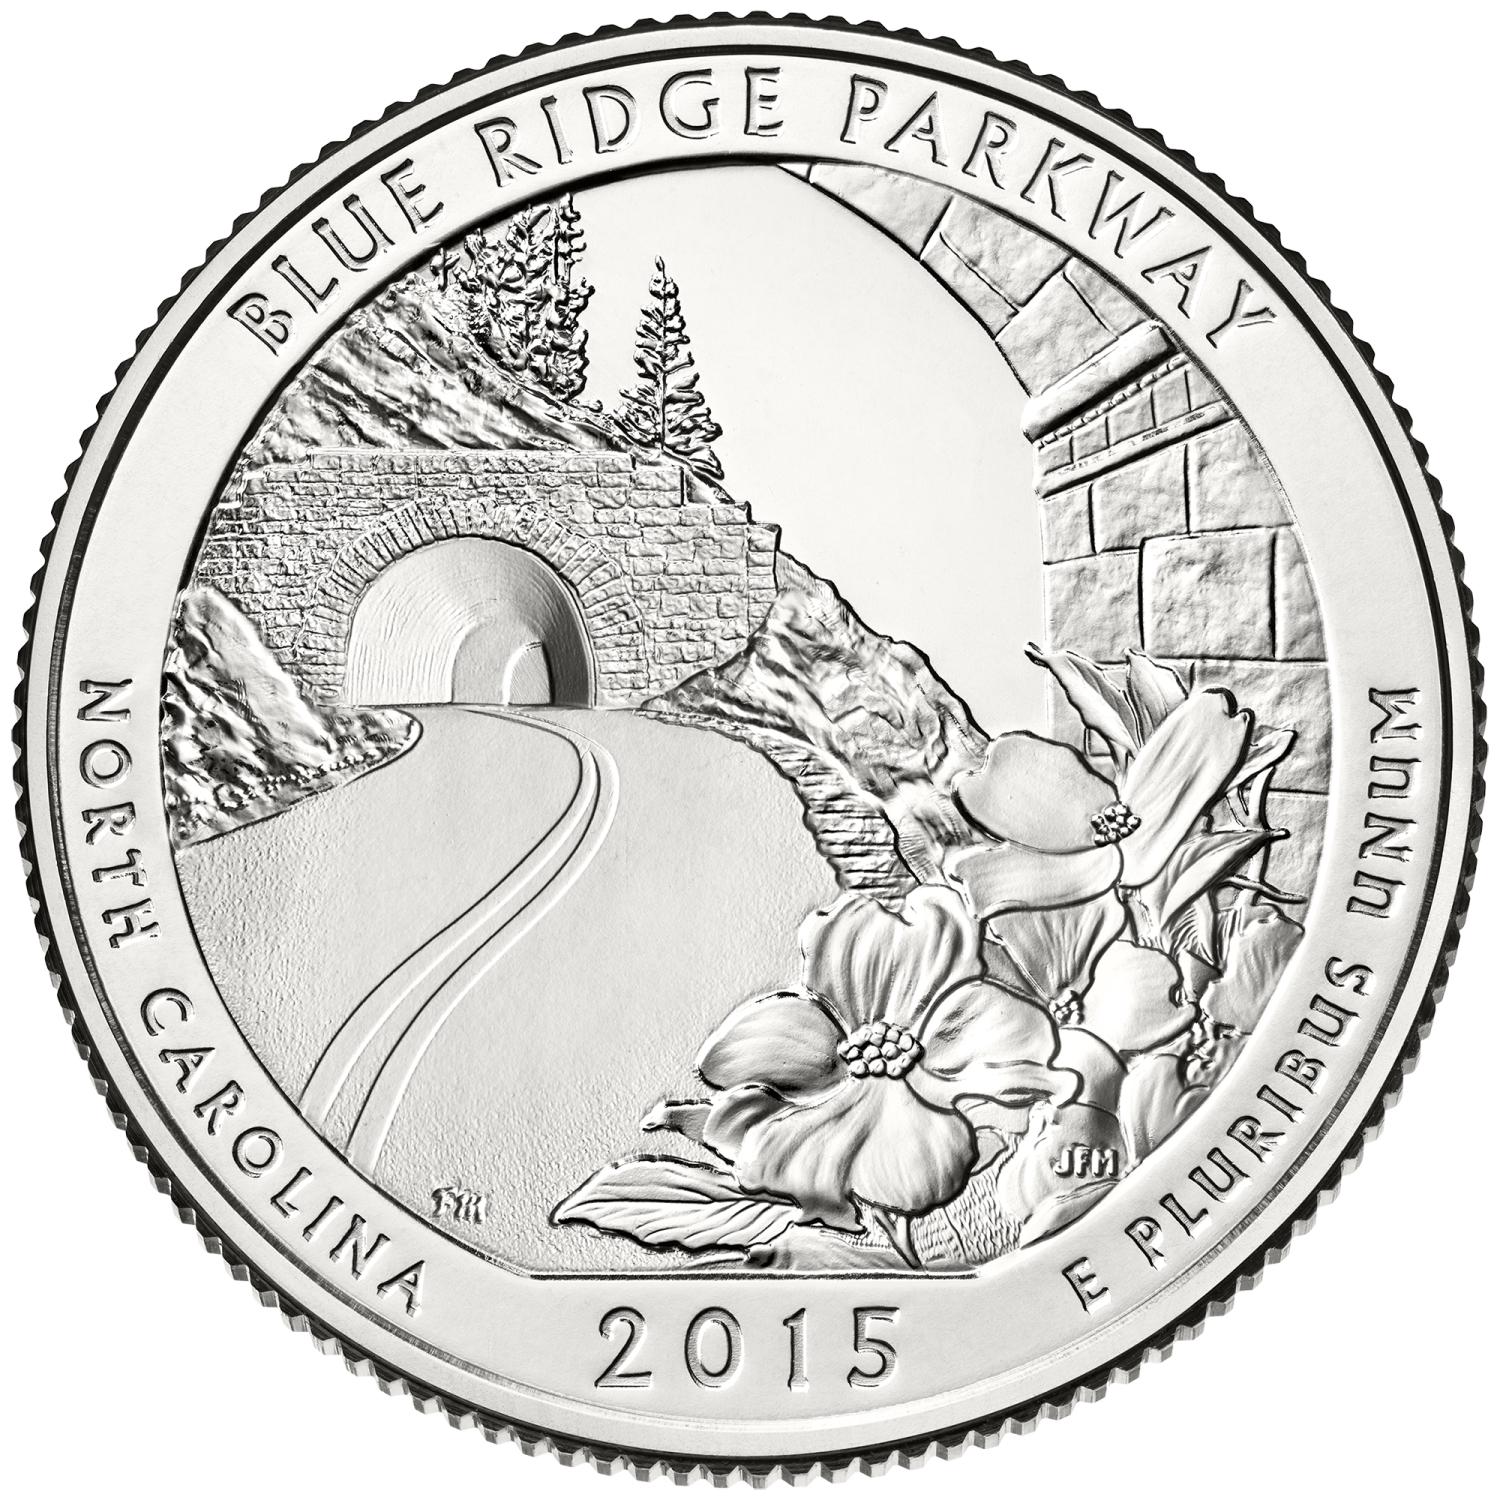 Quarter Dollar Commémorative des Etats-Unis 2015 - Blue Ridge Parkway